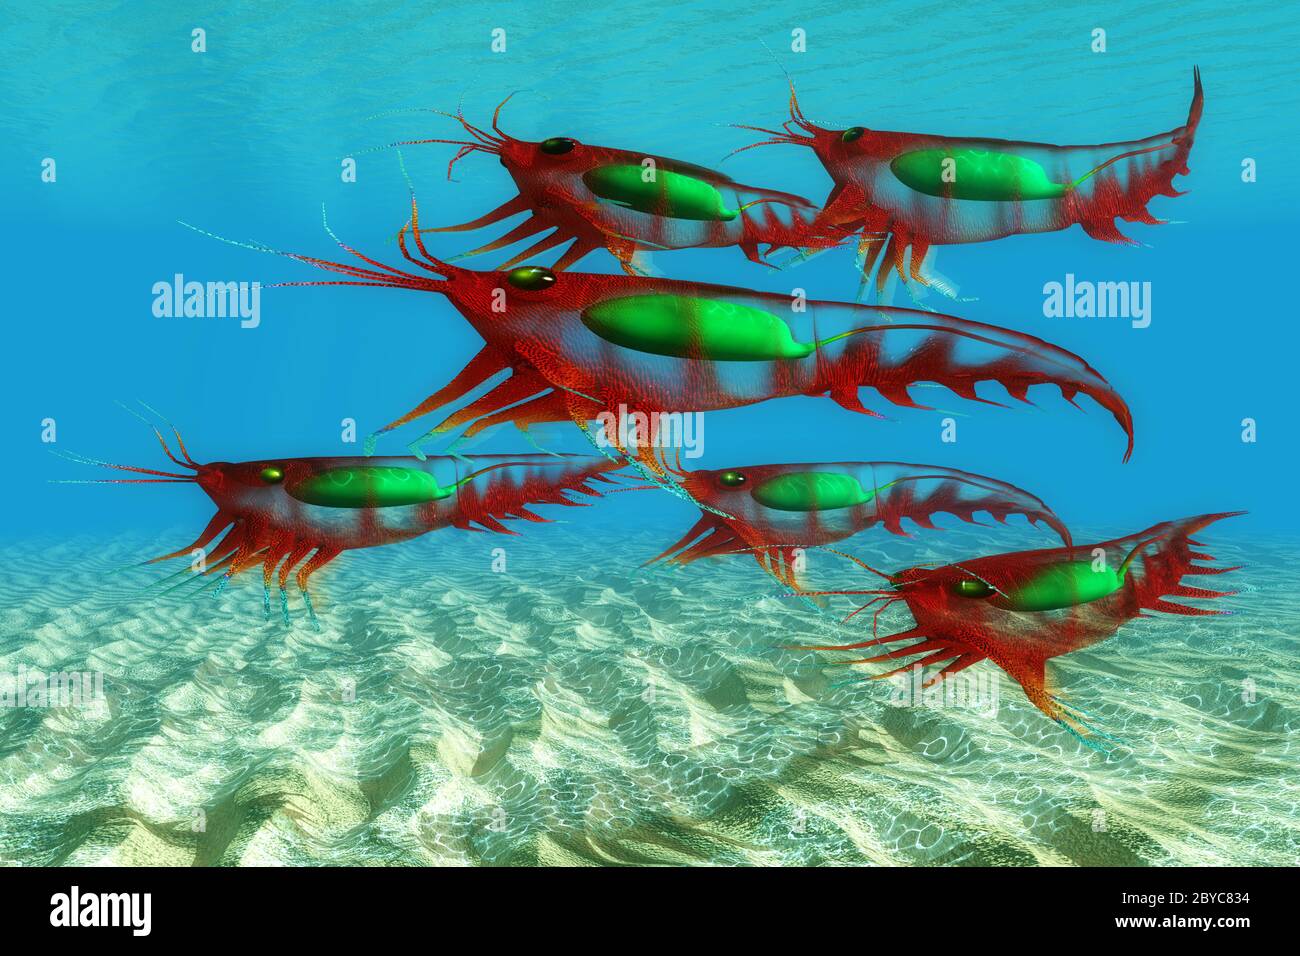 Les poissons de krill des crustacés océaniques fournissent de la nourriture à de nombreux prédateurs et ont des migrations quotidiennes verticales dans la colonne d'eau. Banque D'Images